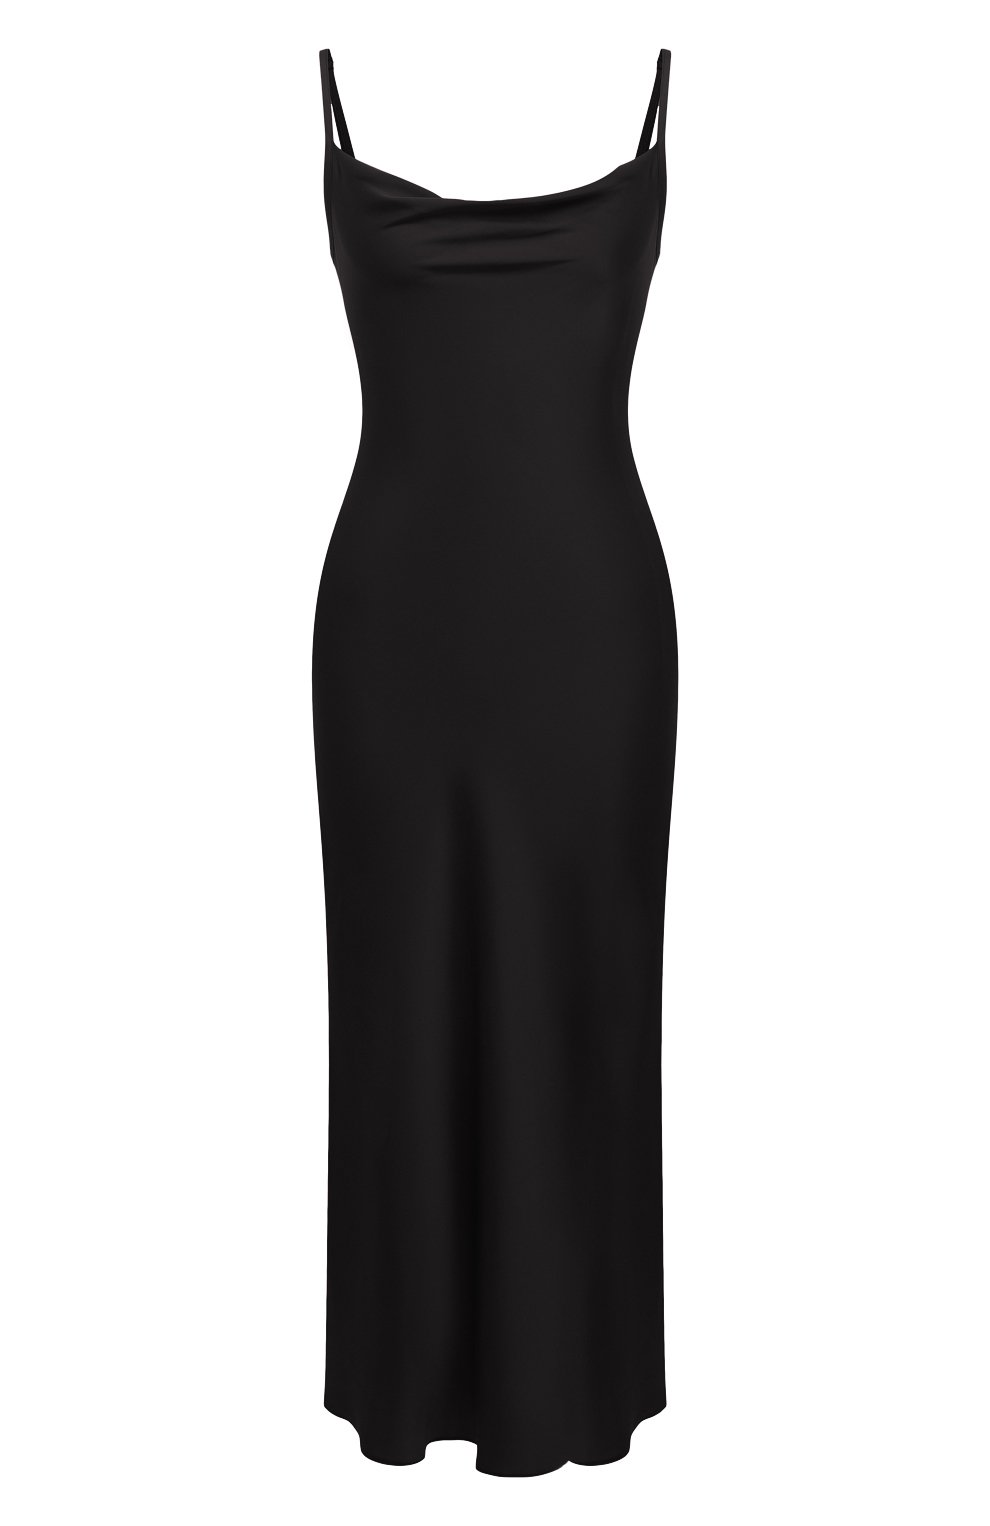 Шелковое женское платье сорочка черное платье миди вечернее на тонких бретелях из шелка